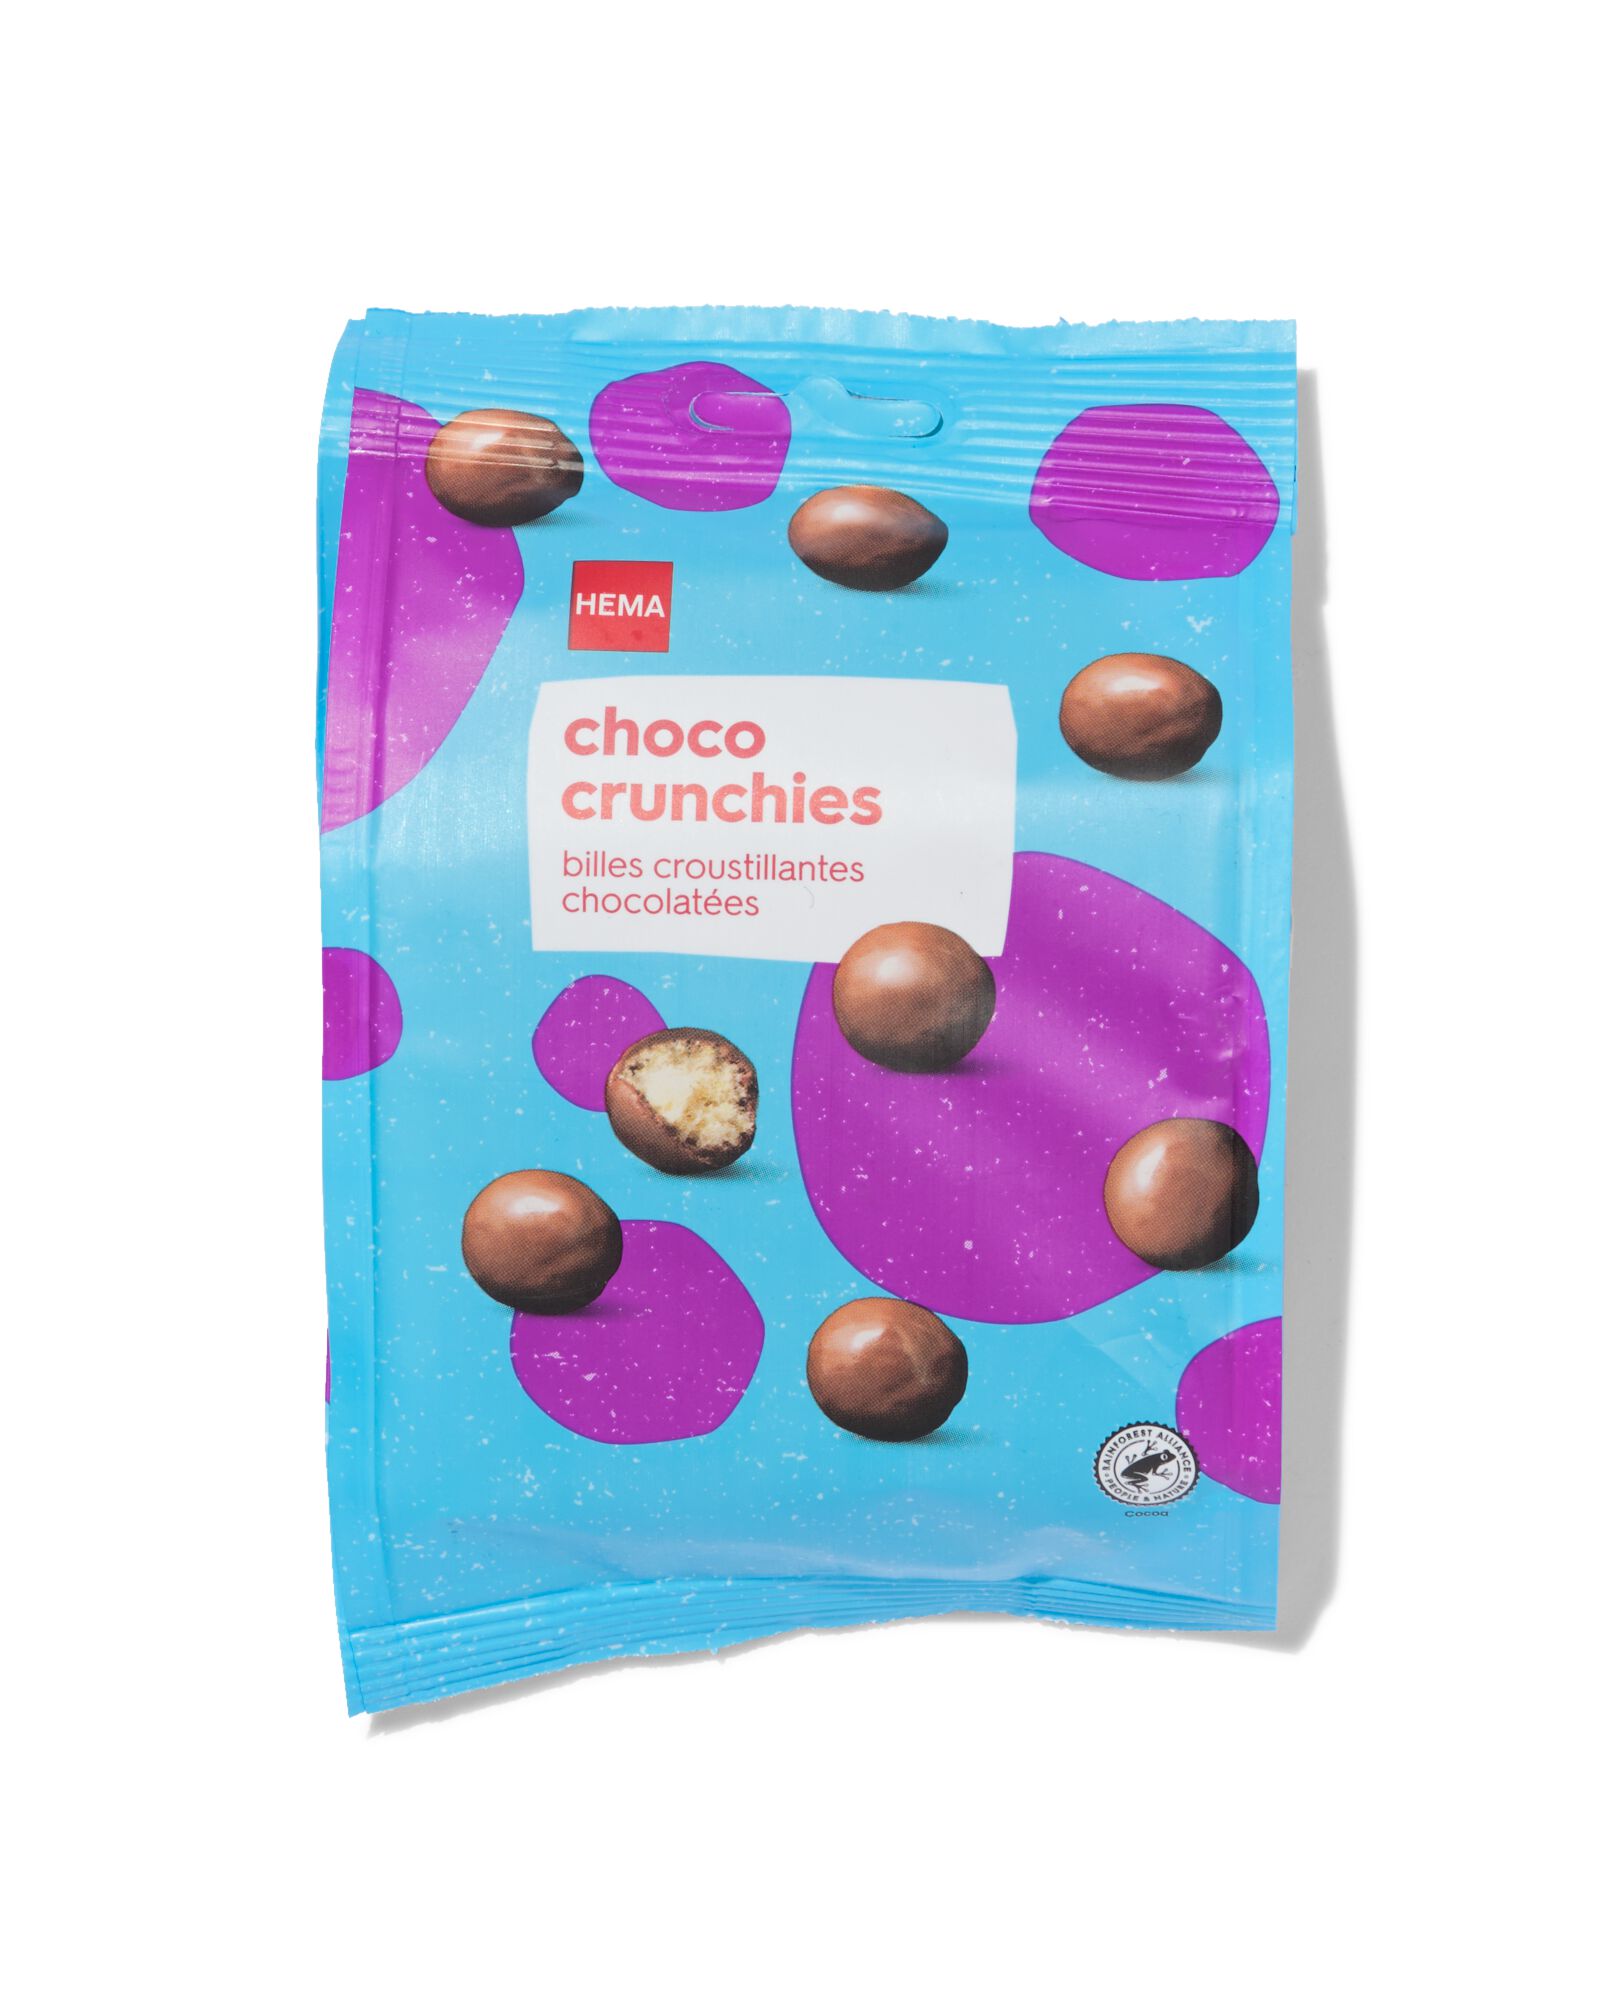 HEMA Choco Crunchies 175g